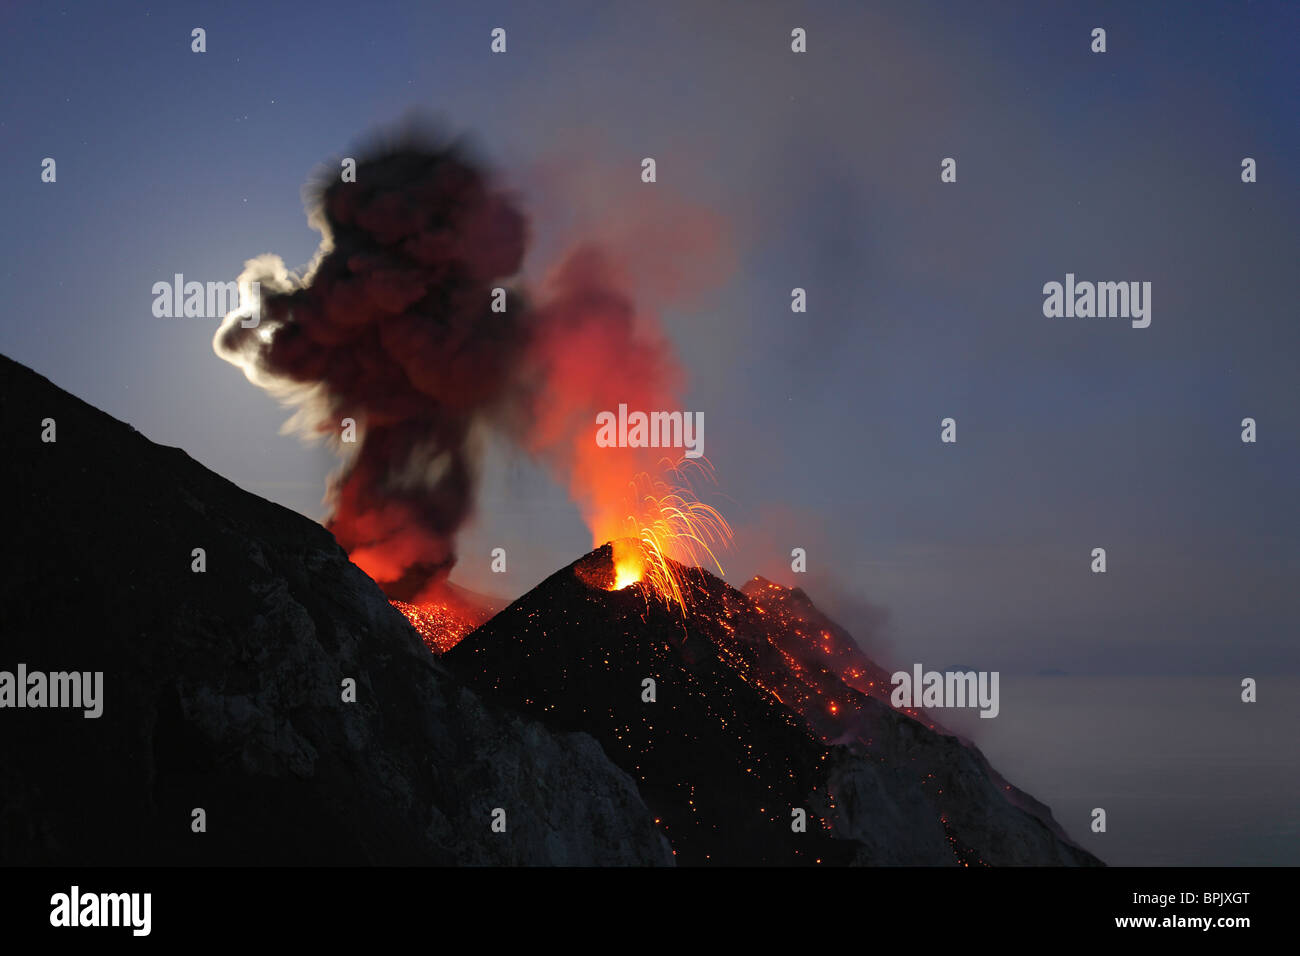 Mayo 10, 2009 - Stromboli erupción, las Islas Eolias, al norte de Sicilia, Italia. Foto de stock